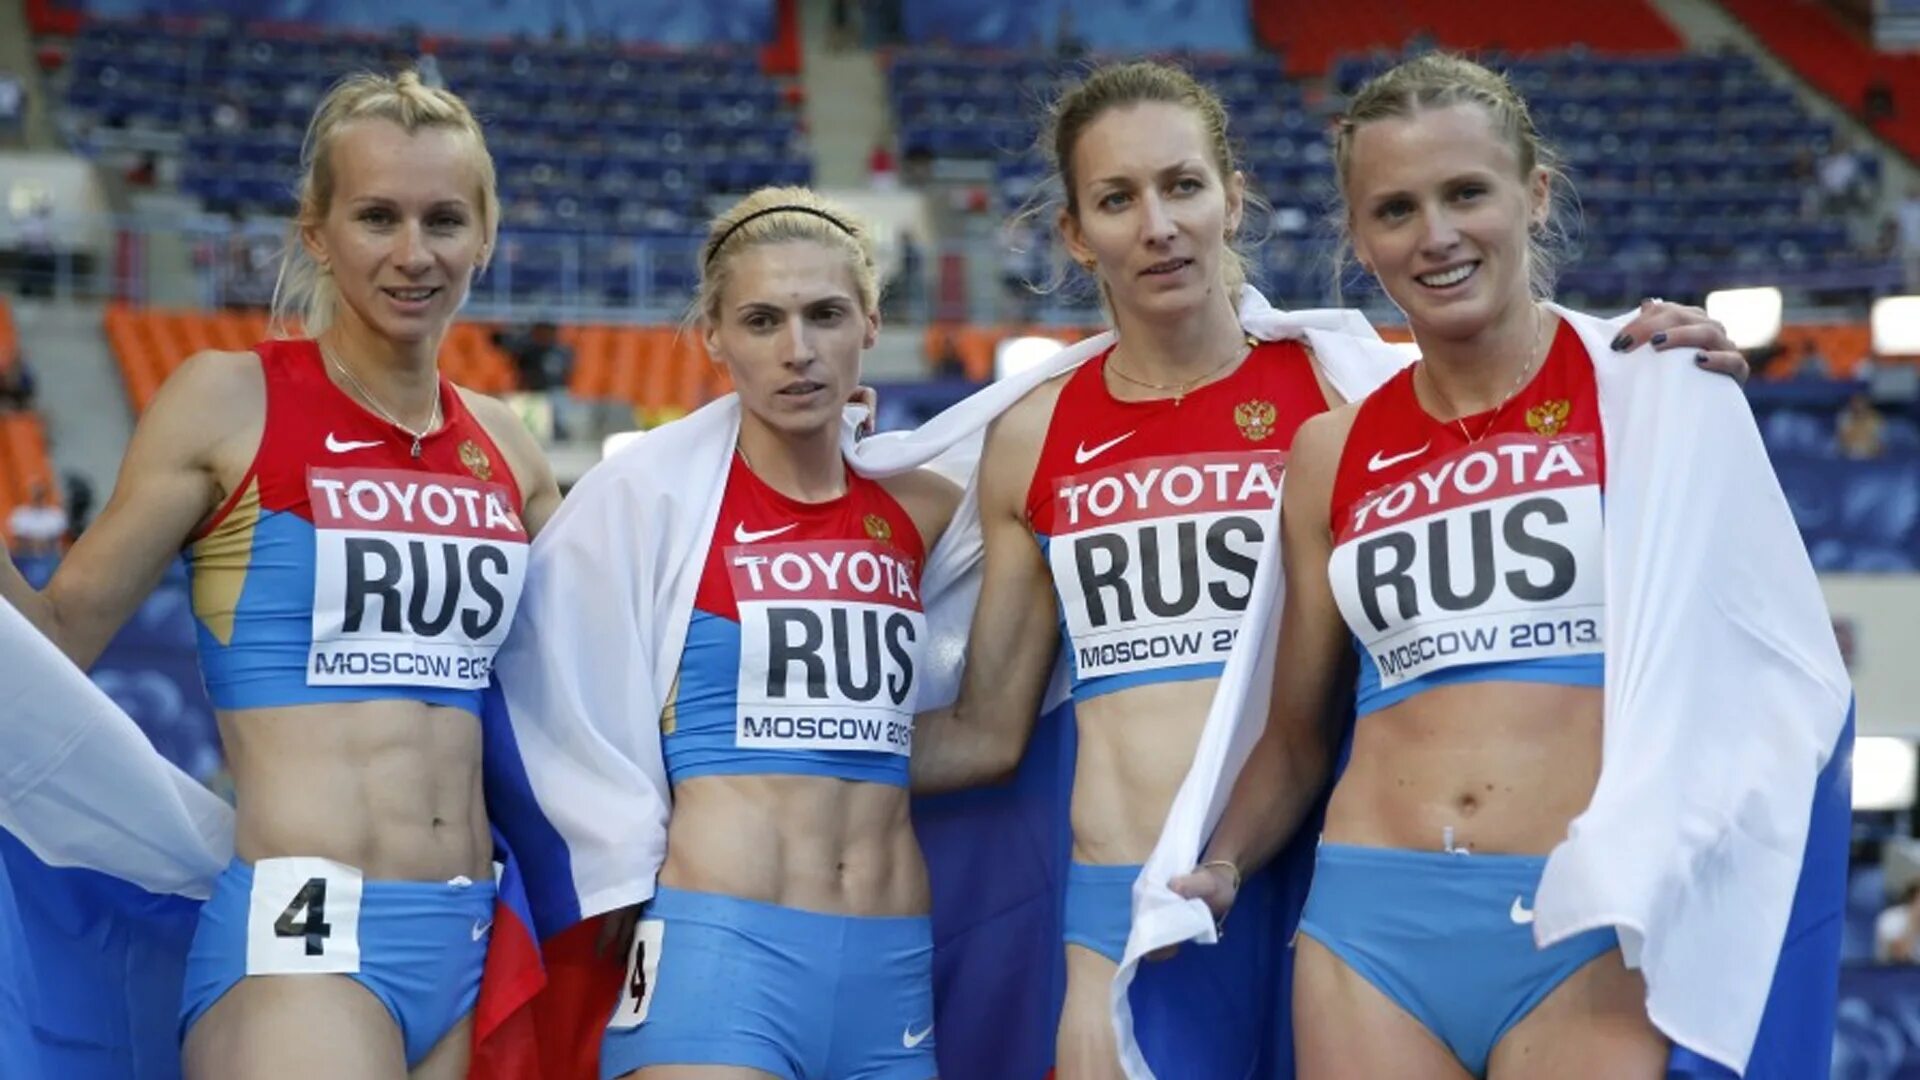 Спорт в России. Какой самый распространенный спорт